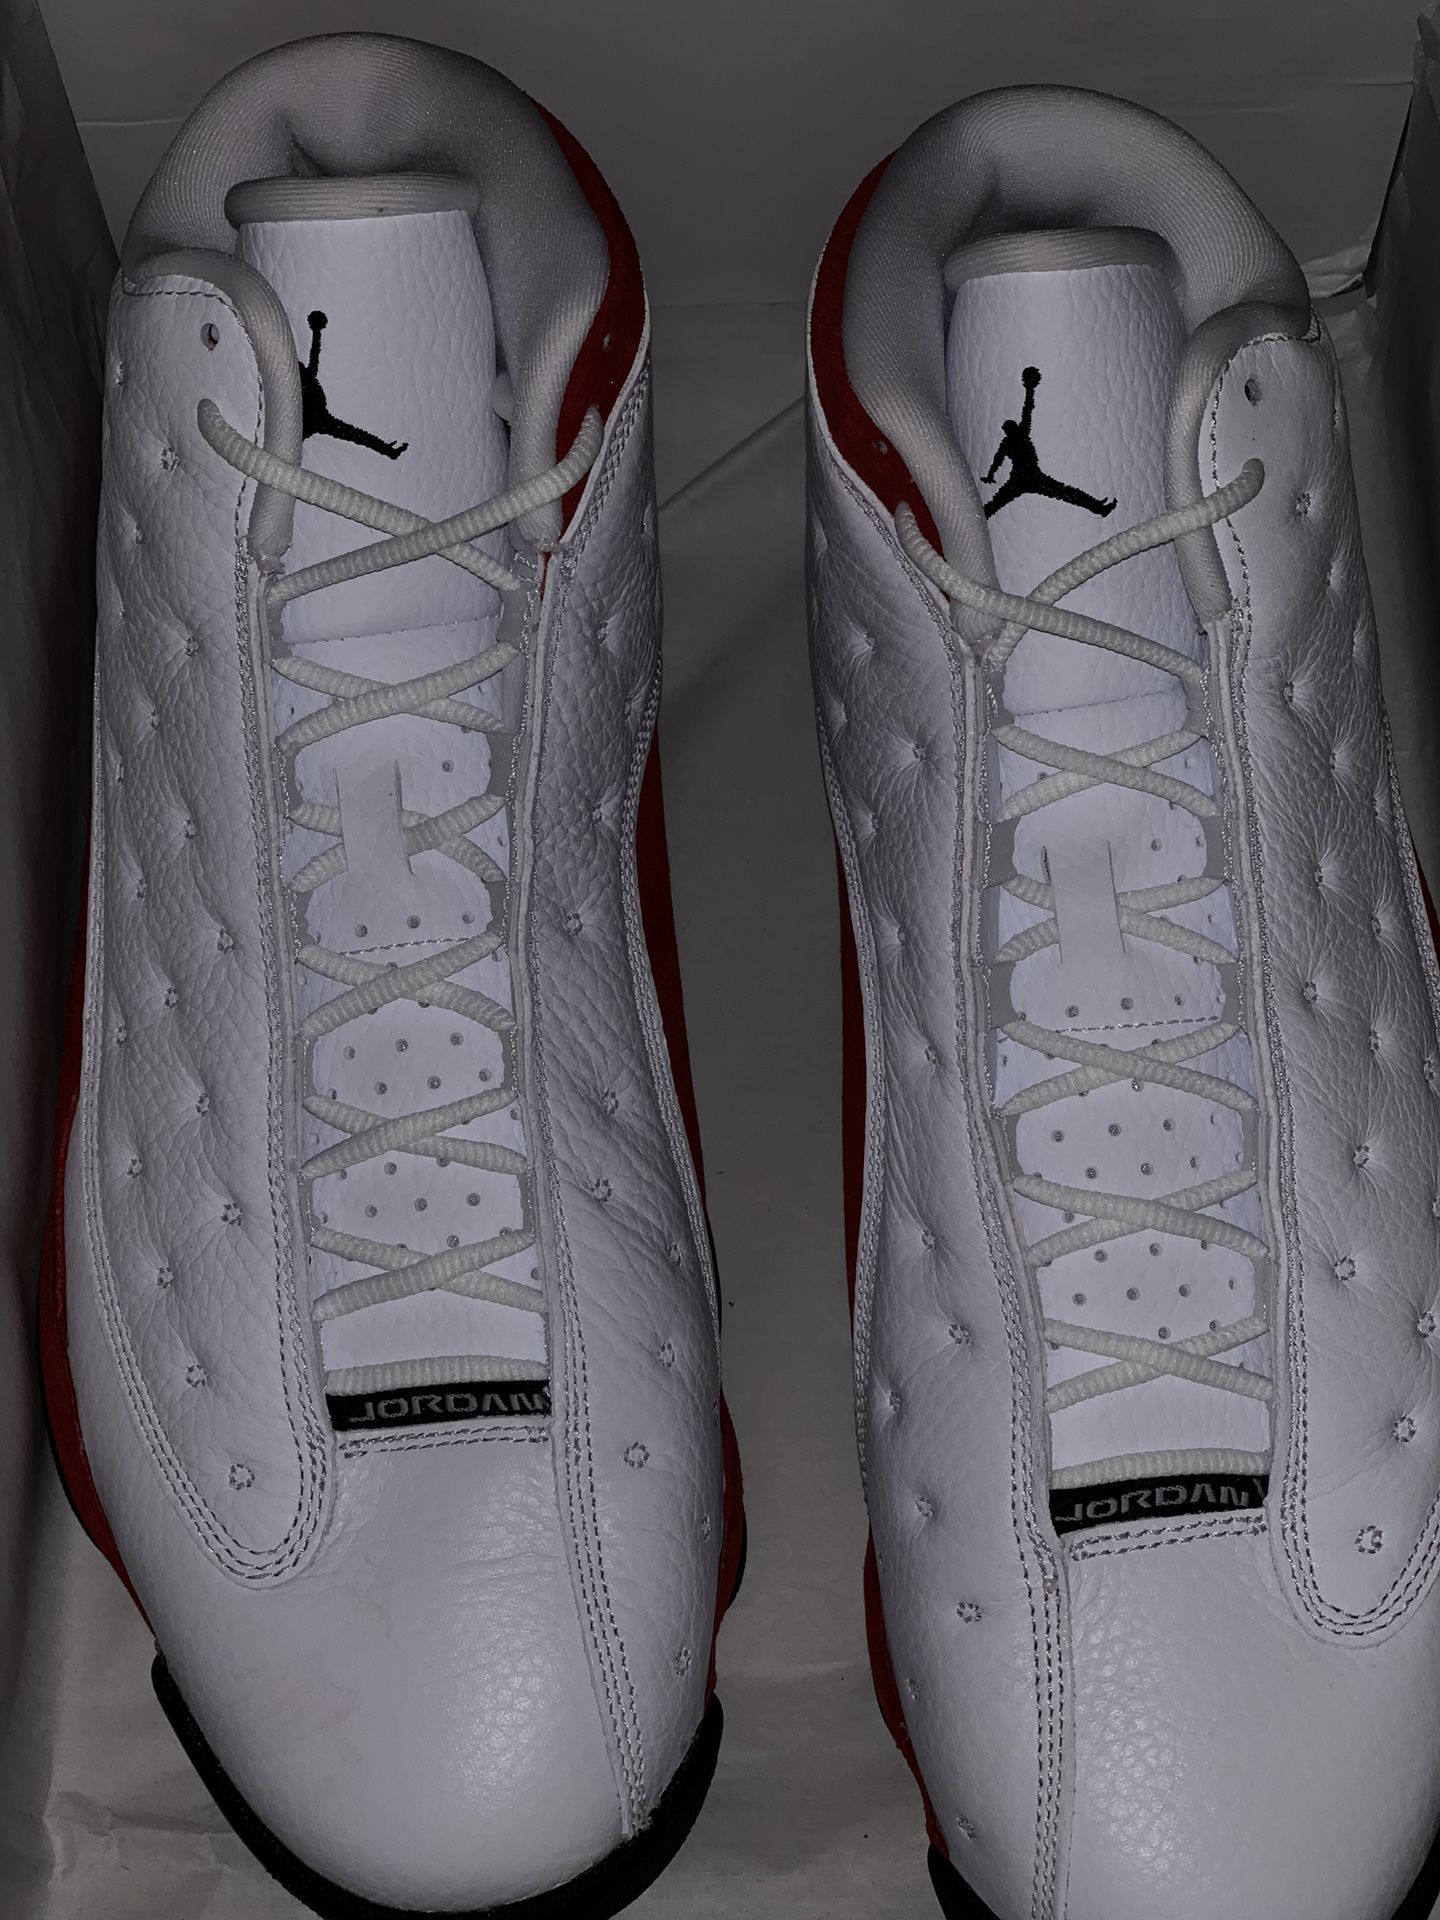 Deadstock Nike Air Jordan Retro 13 size 12 New In Box !!